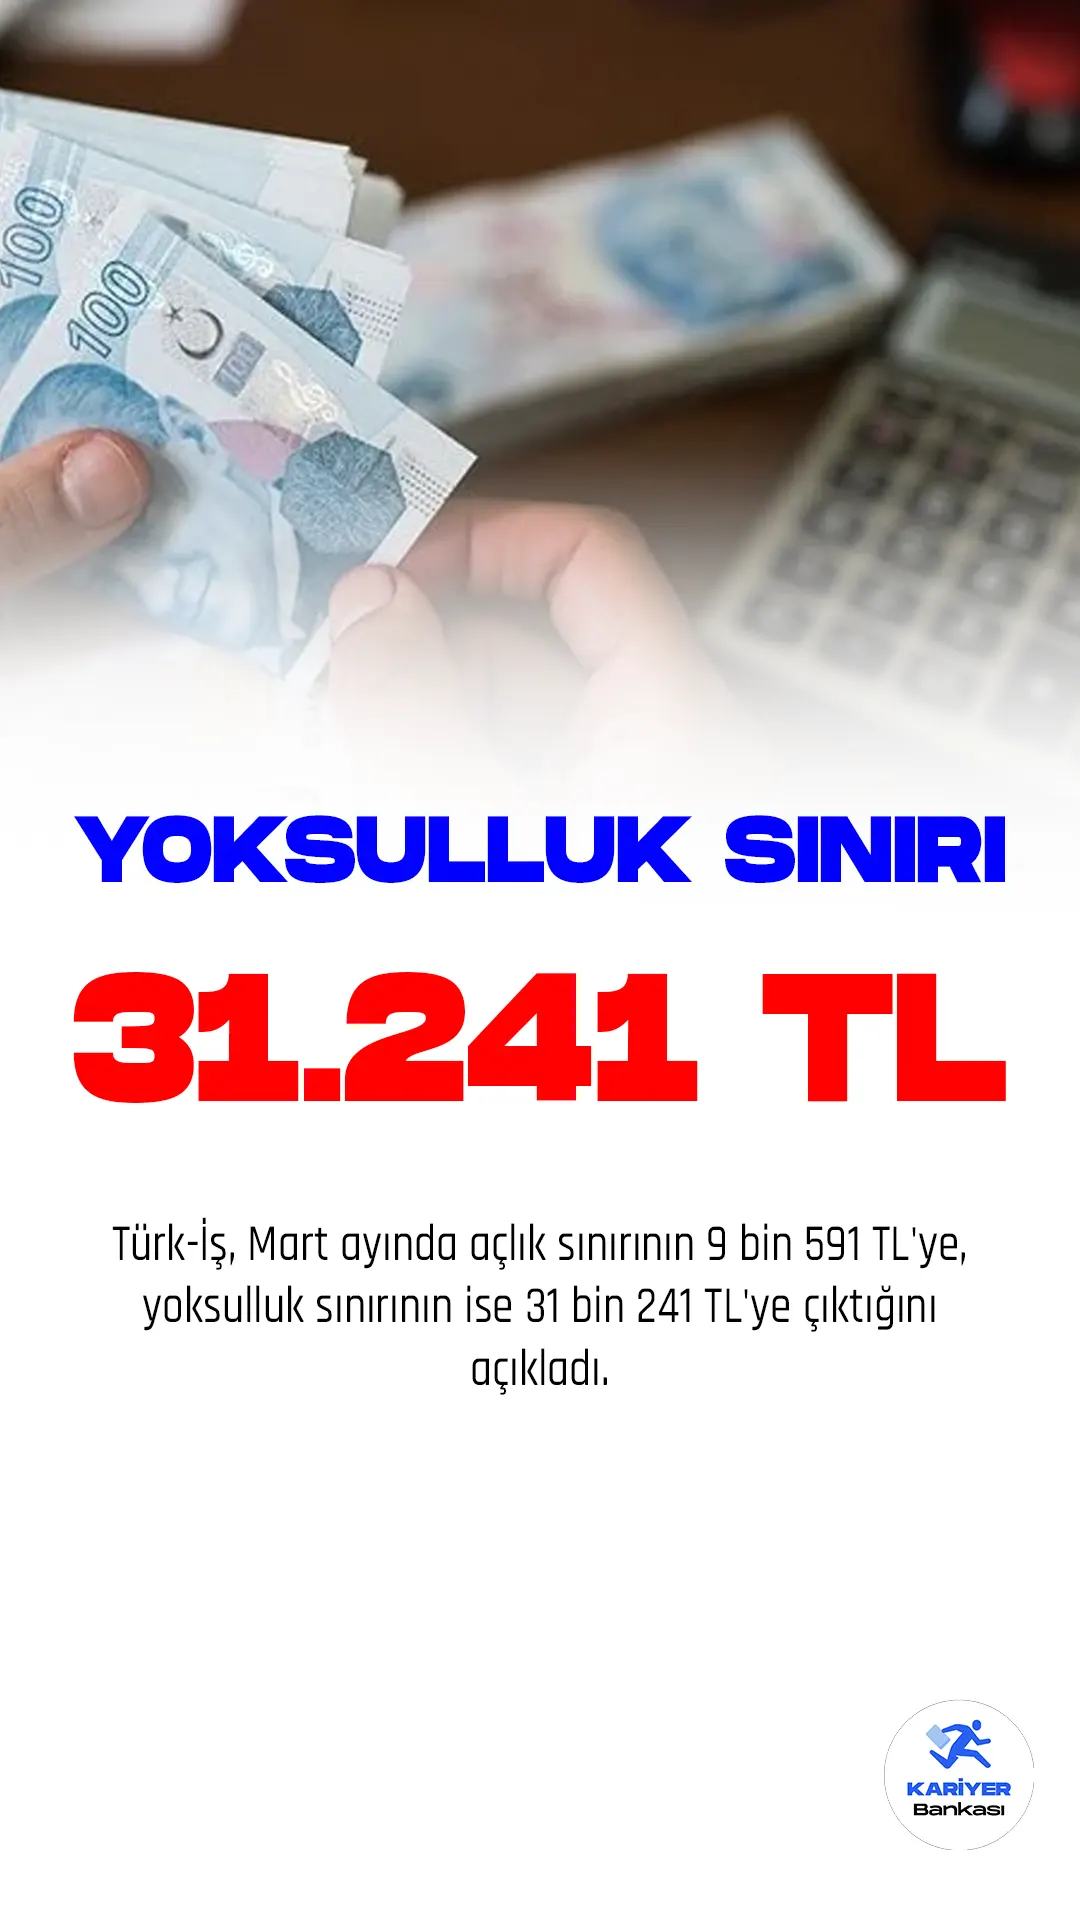 Türk-İş, mart ayında açlık sınırının 9 bin 591 TL'ye, yoksulluk sınırının ise 31 bin 241 TL'ye çıktığını açıkladı.